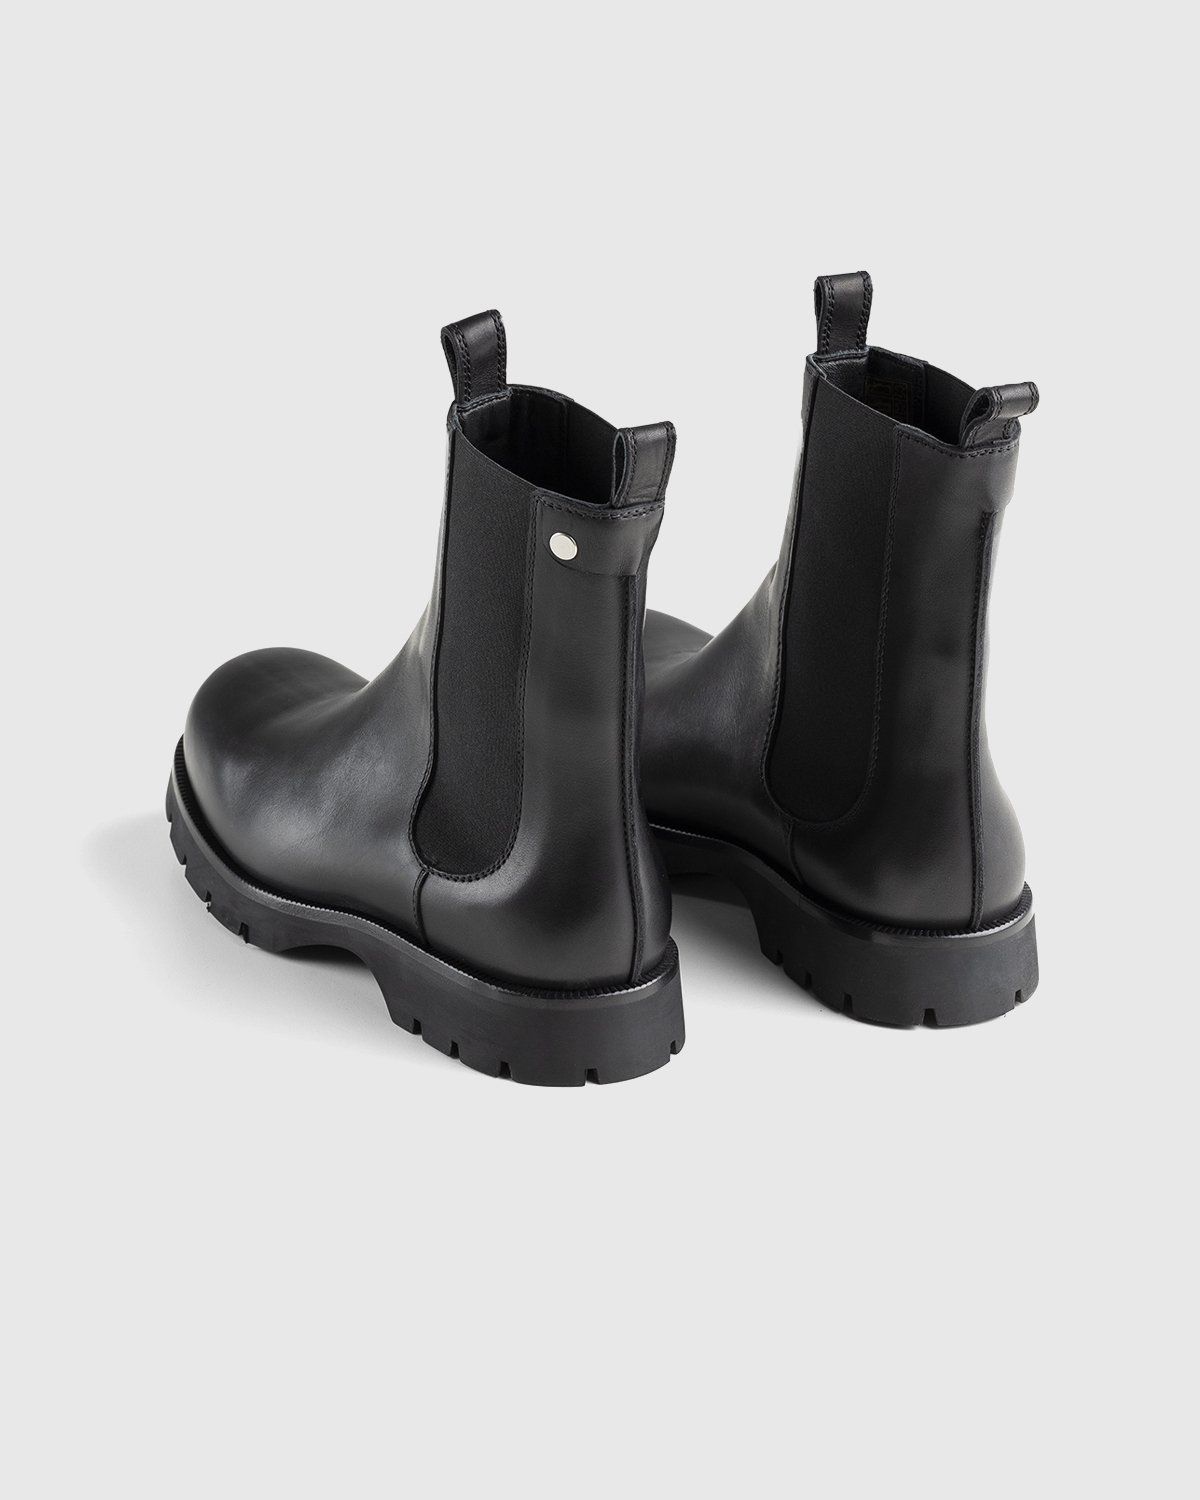 Jil Sander – Chelsea Boots Black - Image 4